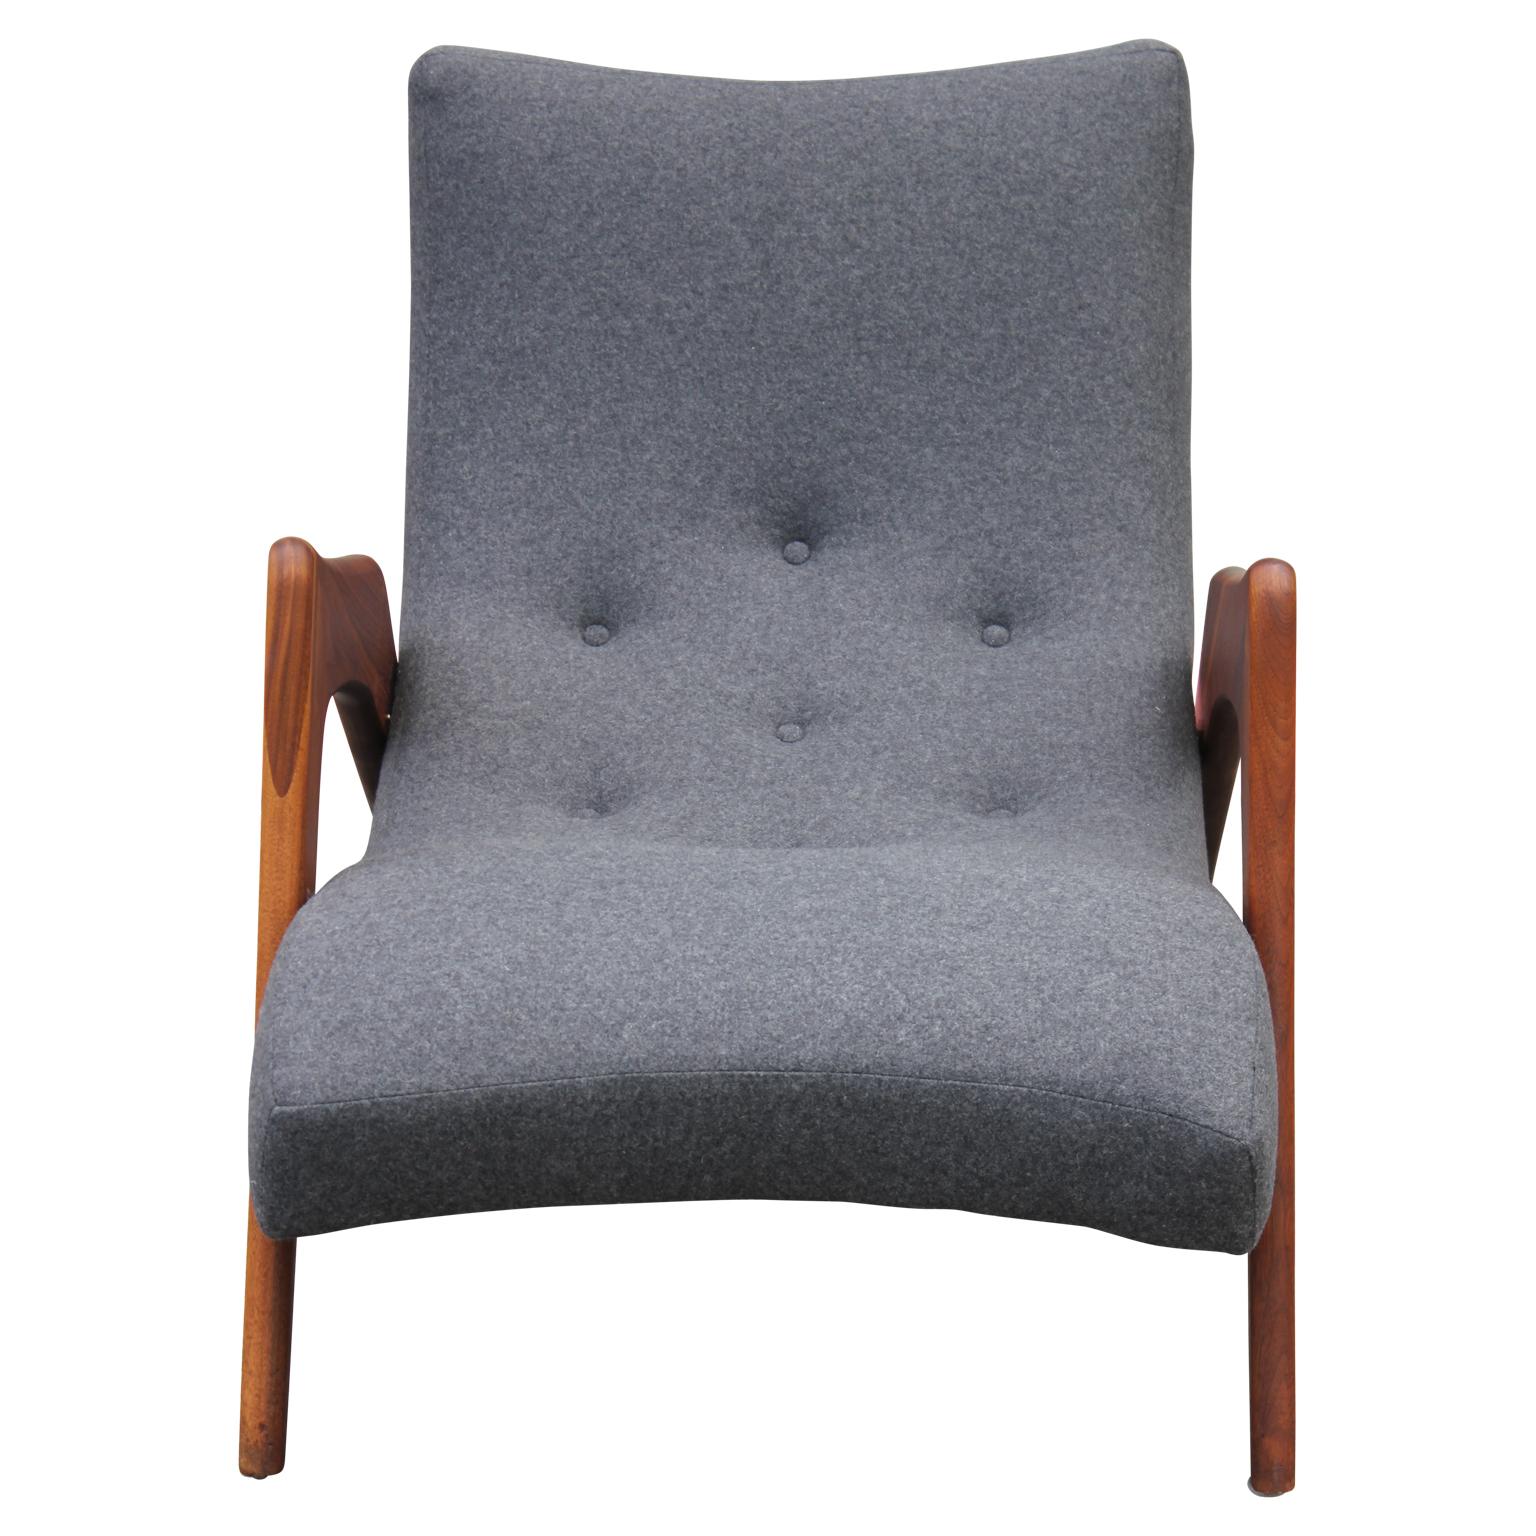 Mid-20th Century Modern Grey Wool Adrian Pearsall Walnut Grasshopper Lounge Chair